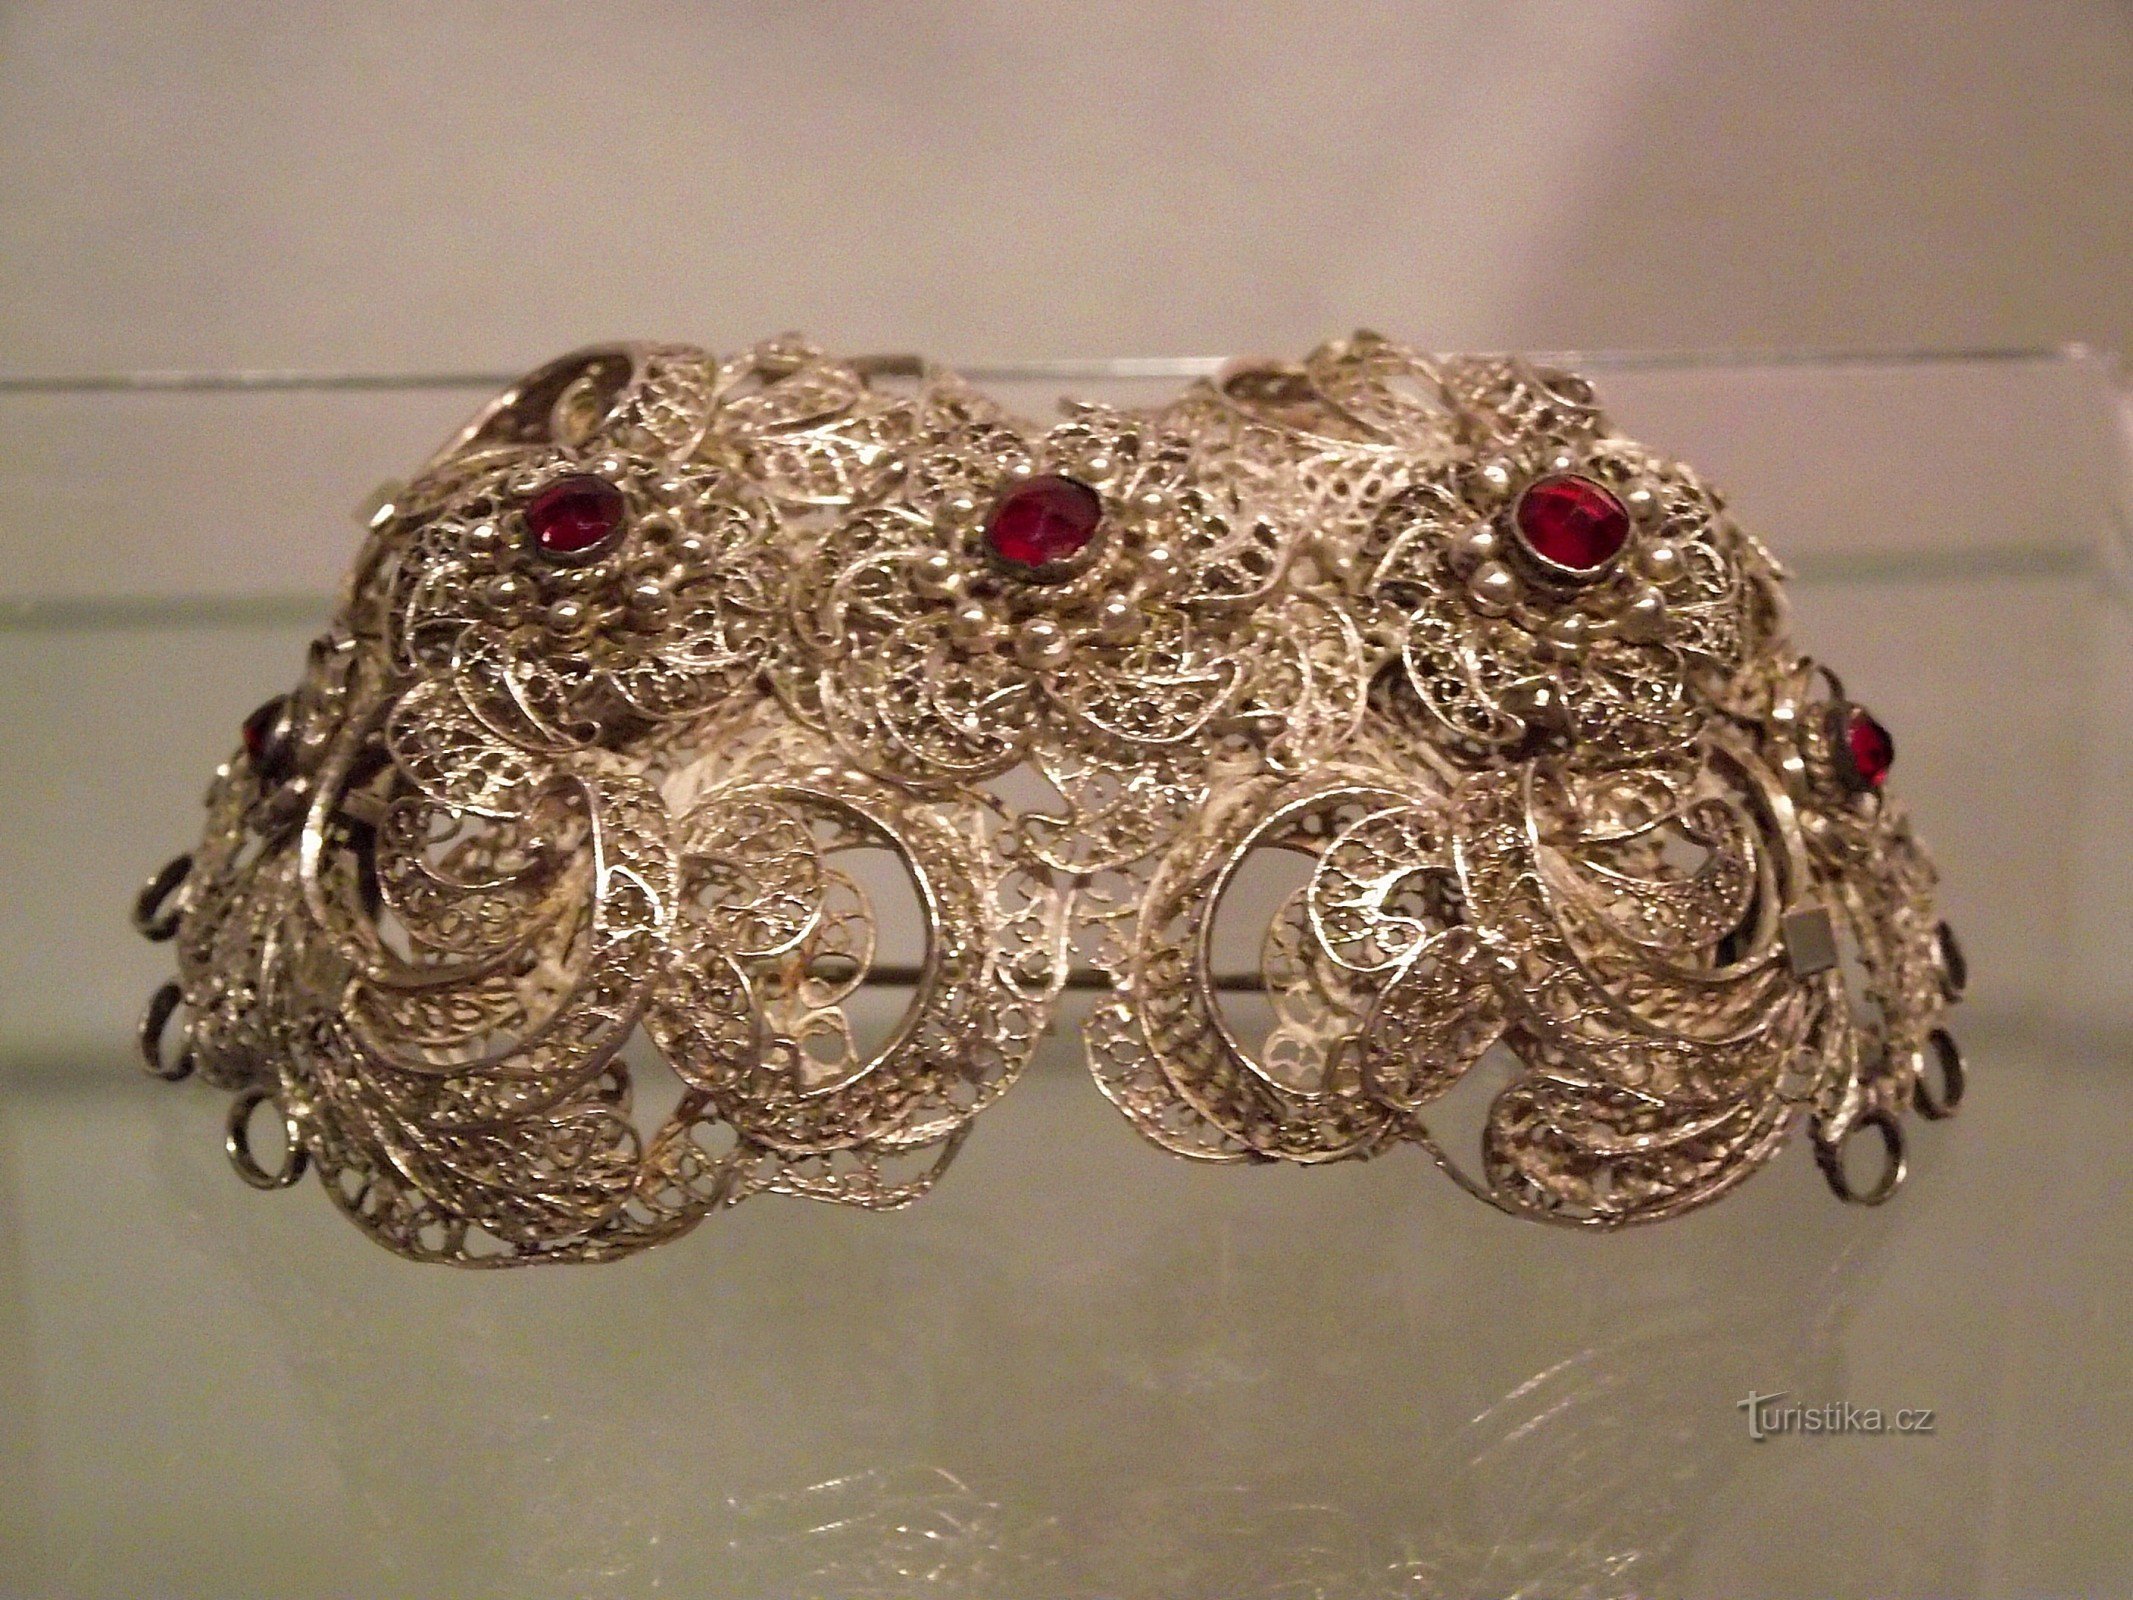 Šumperk museum smykkeskrin (VM Šumperk)